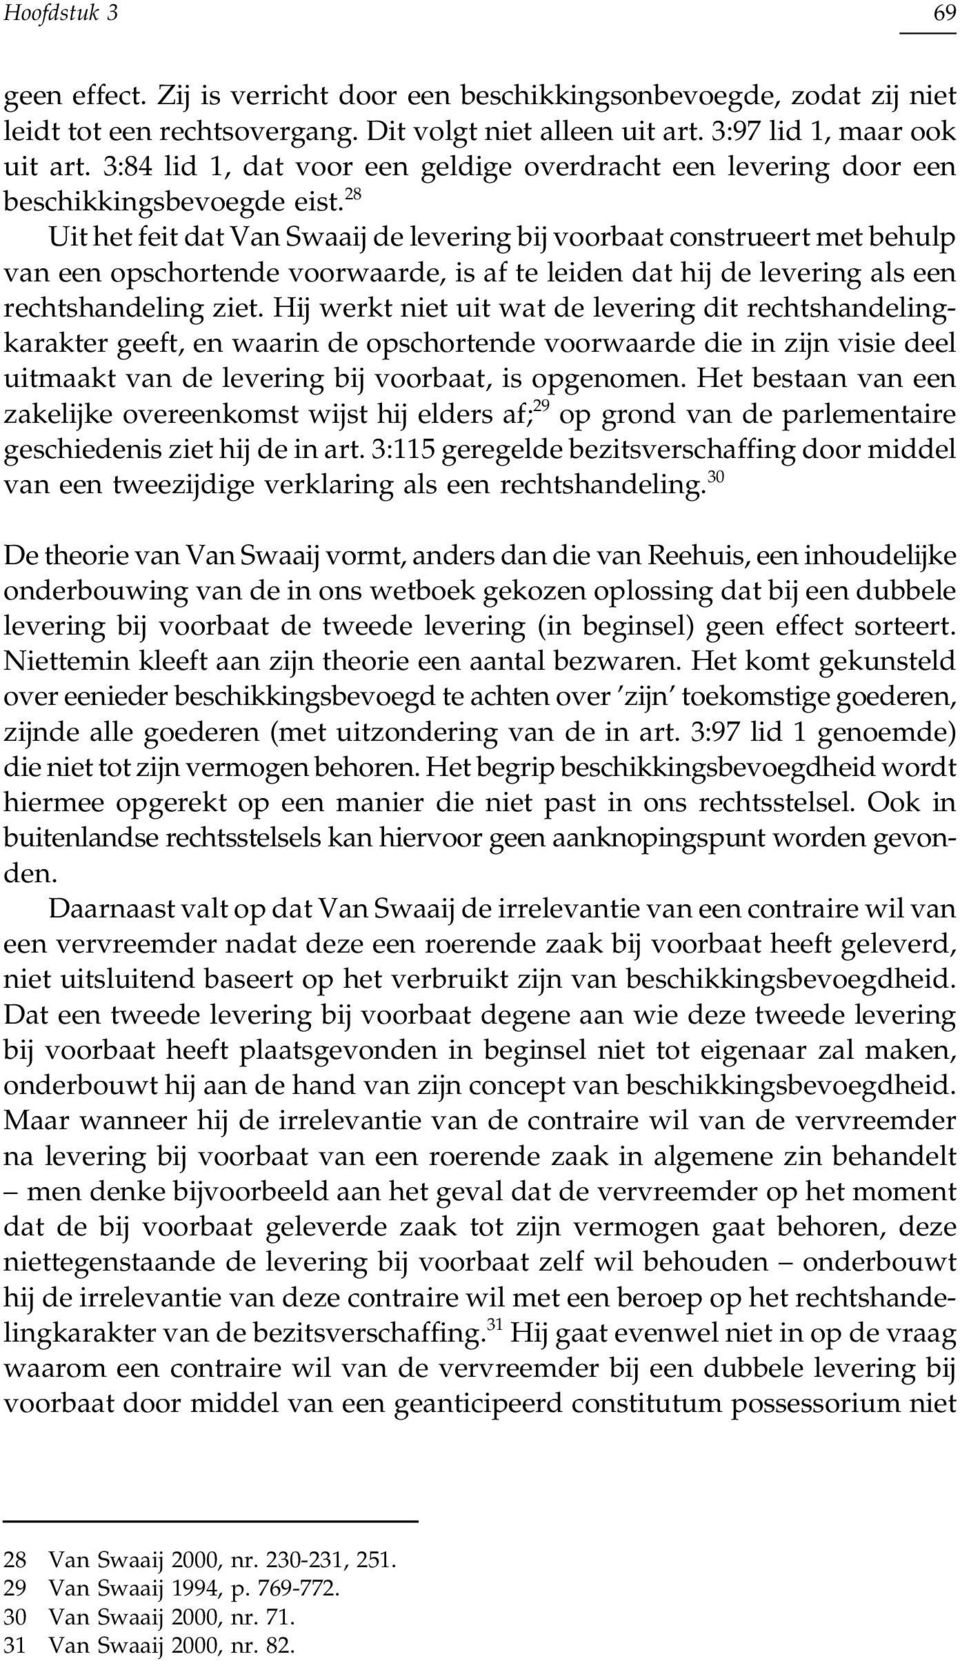 28 Uit het feit dat Van Swaaij de levering bij voorbaat construeert met behulp van een opschortende voorwaarde, is af te leiden dat hij de levering als een rechtshandeling ziet.